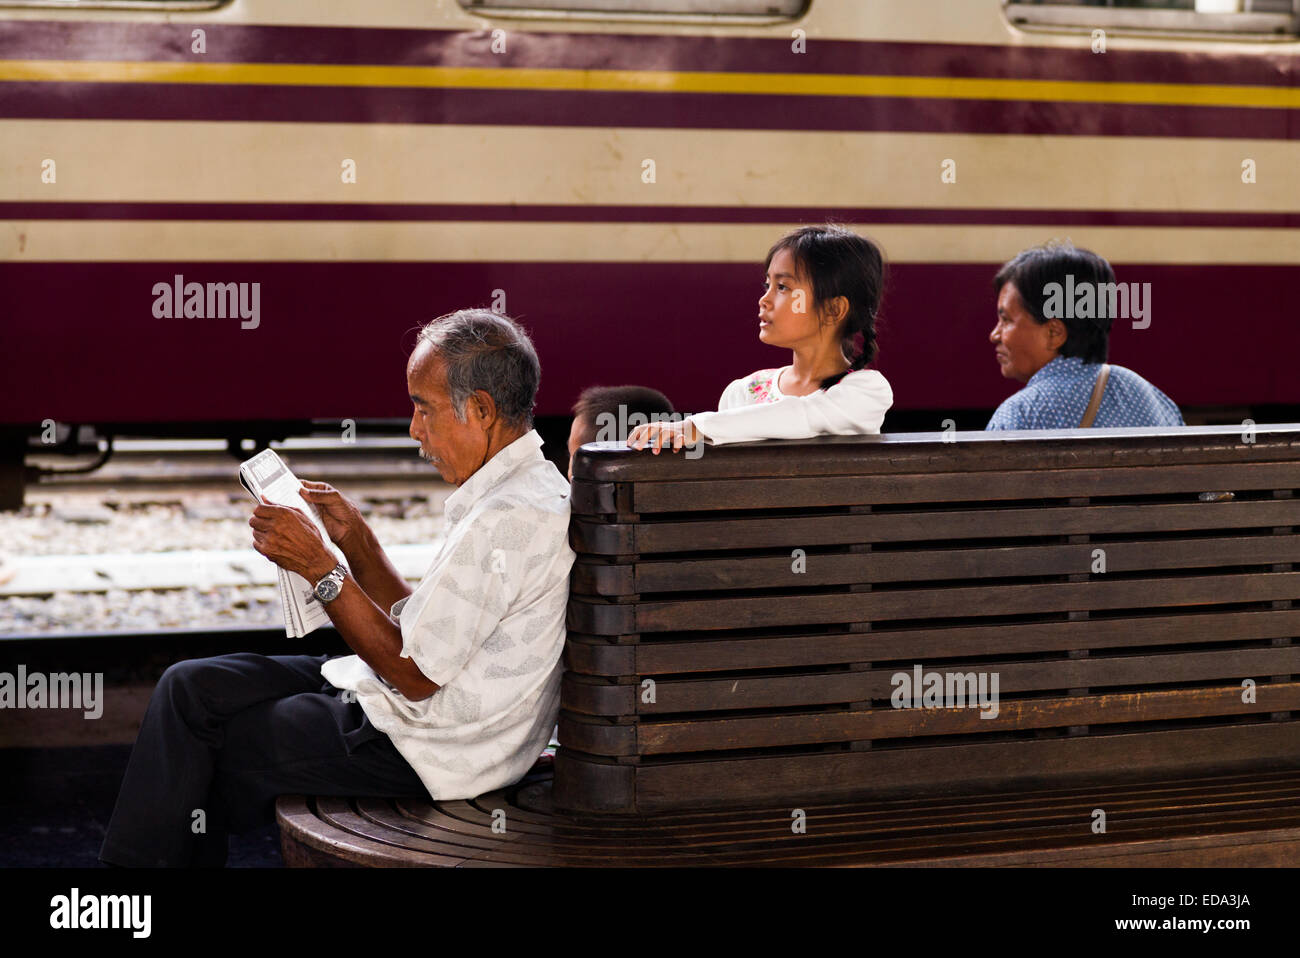 Family, Hualamphong main train station, Bangkok, Thailand. Stock Photo